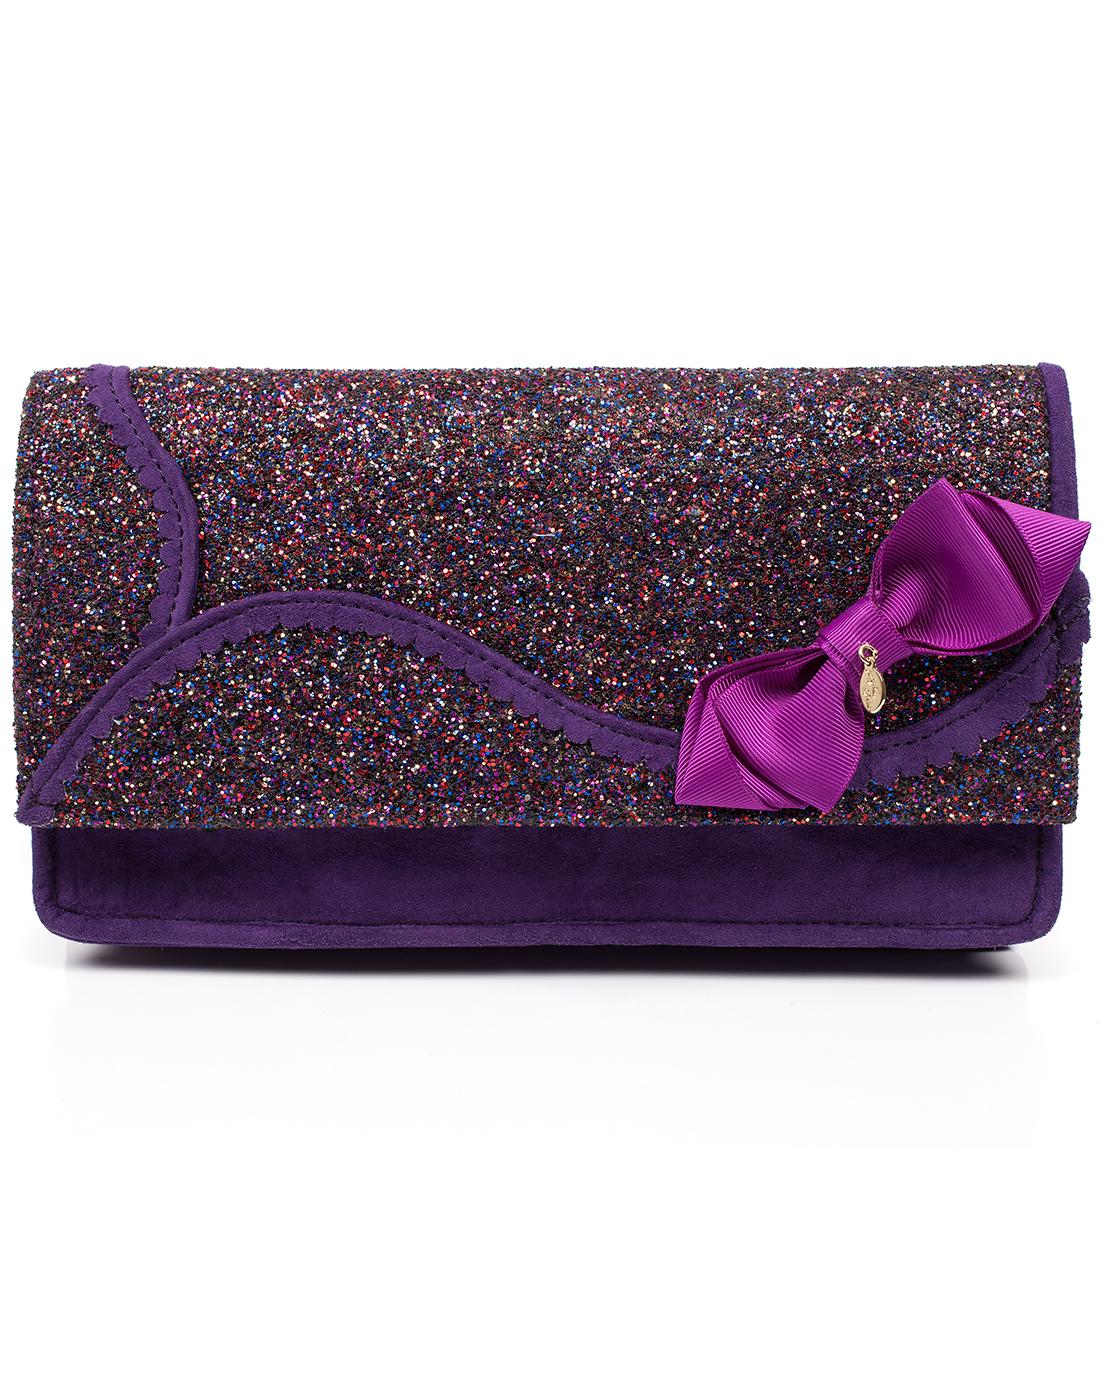 Kanjanka IRREGULAR CHOICE Glitter Clutch Handbag